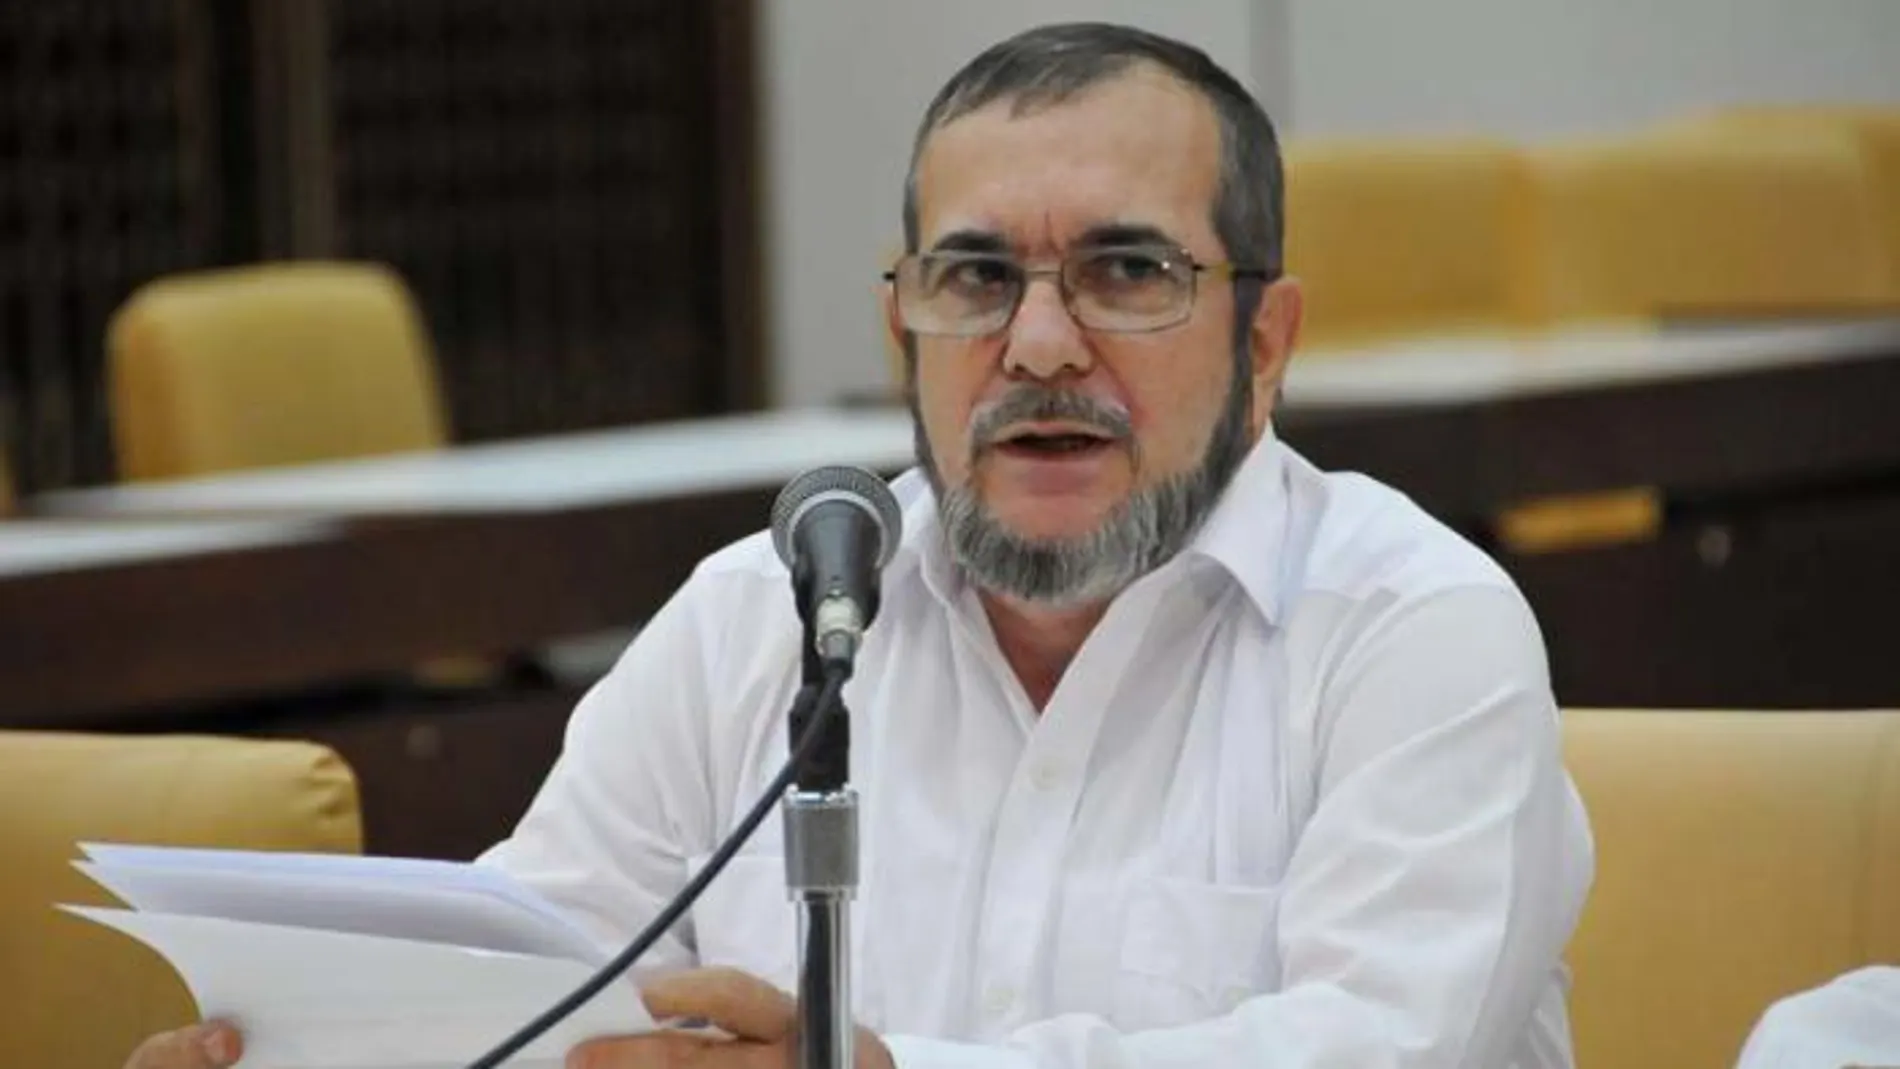 Las FARC recalcan que mantienen su voluntad de paz